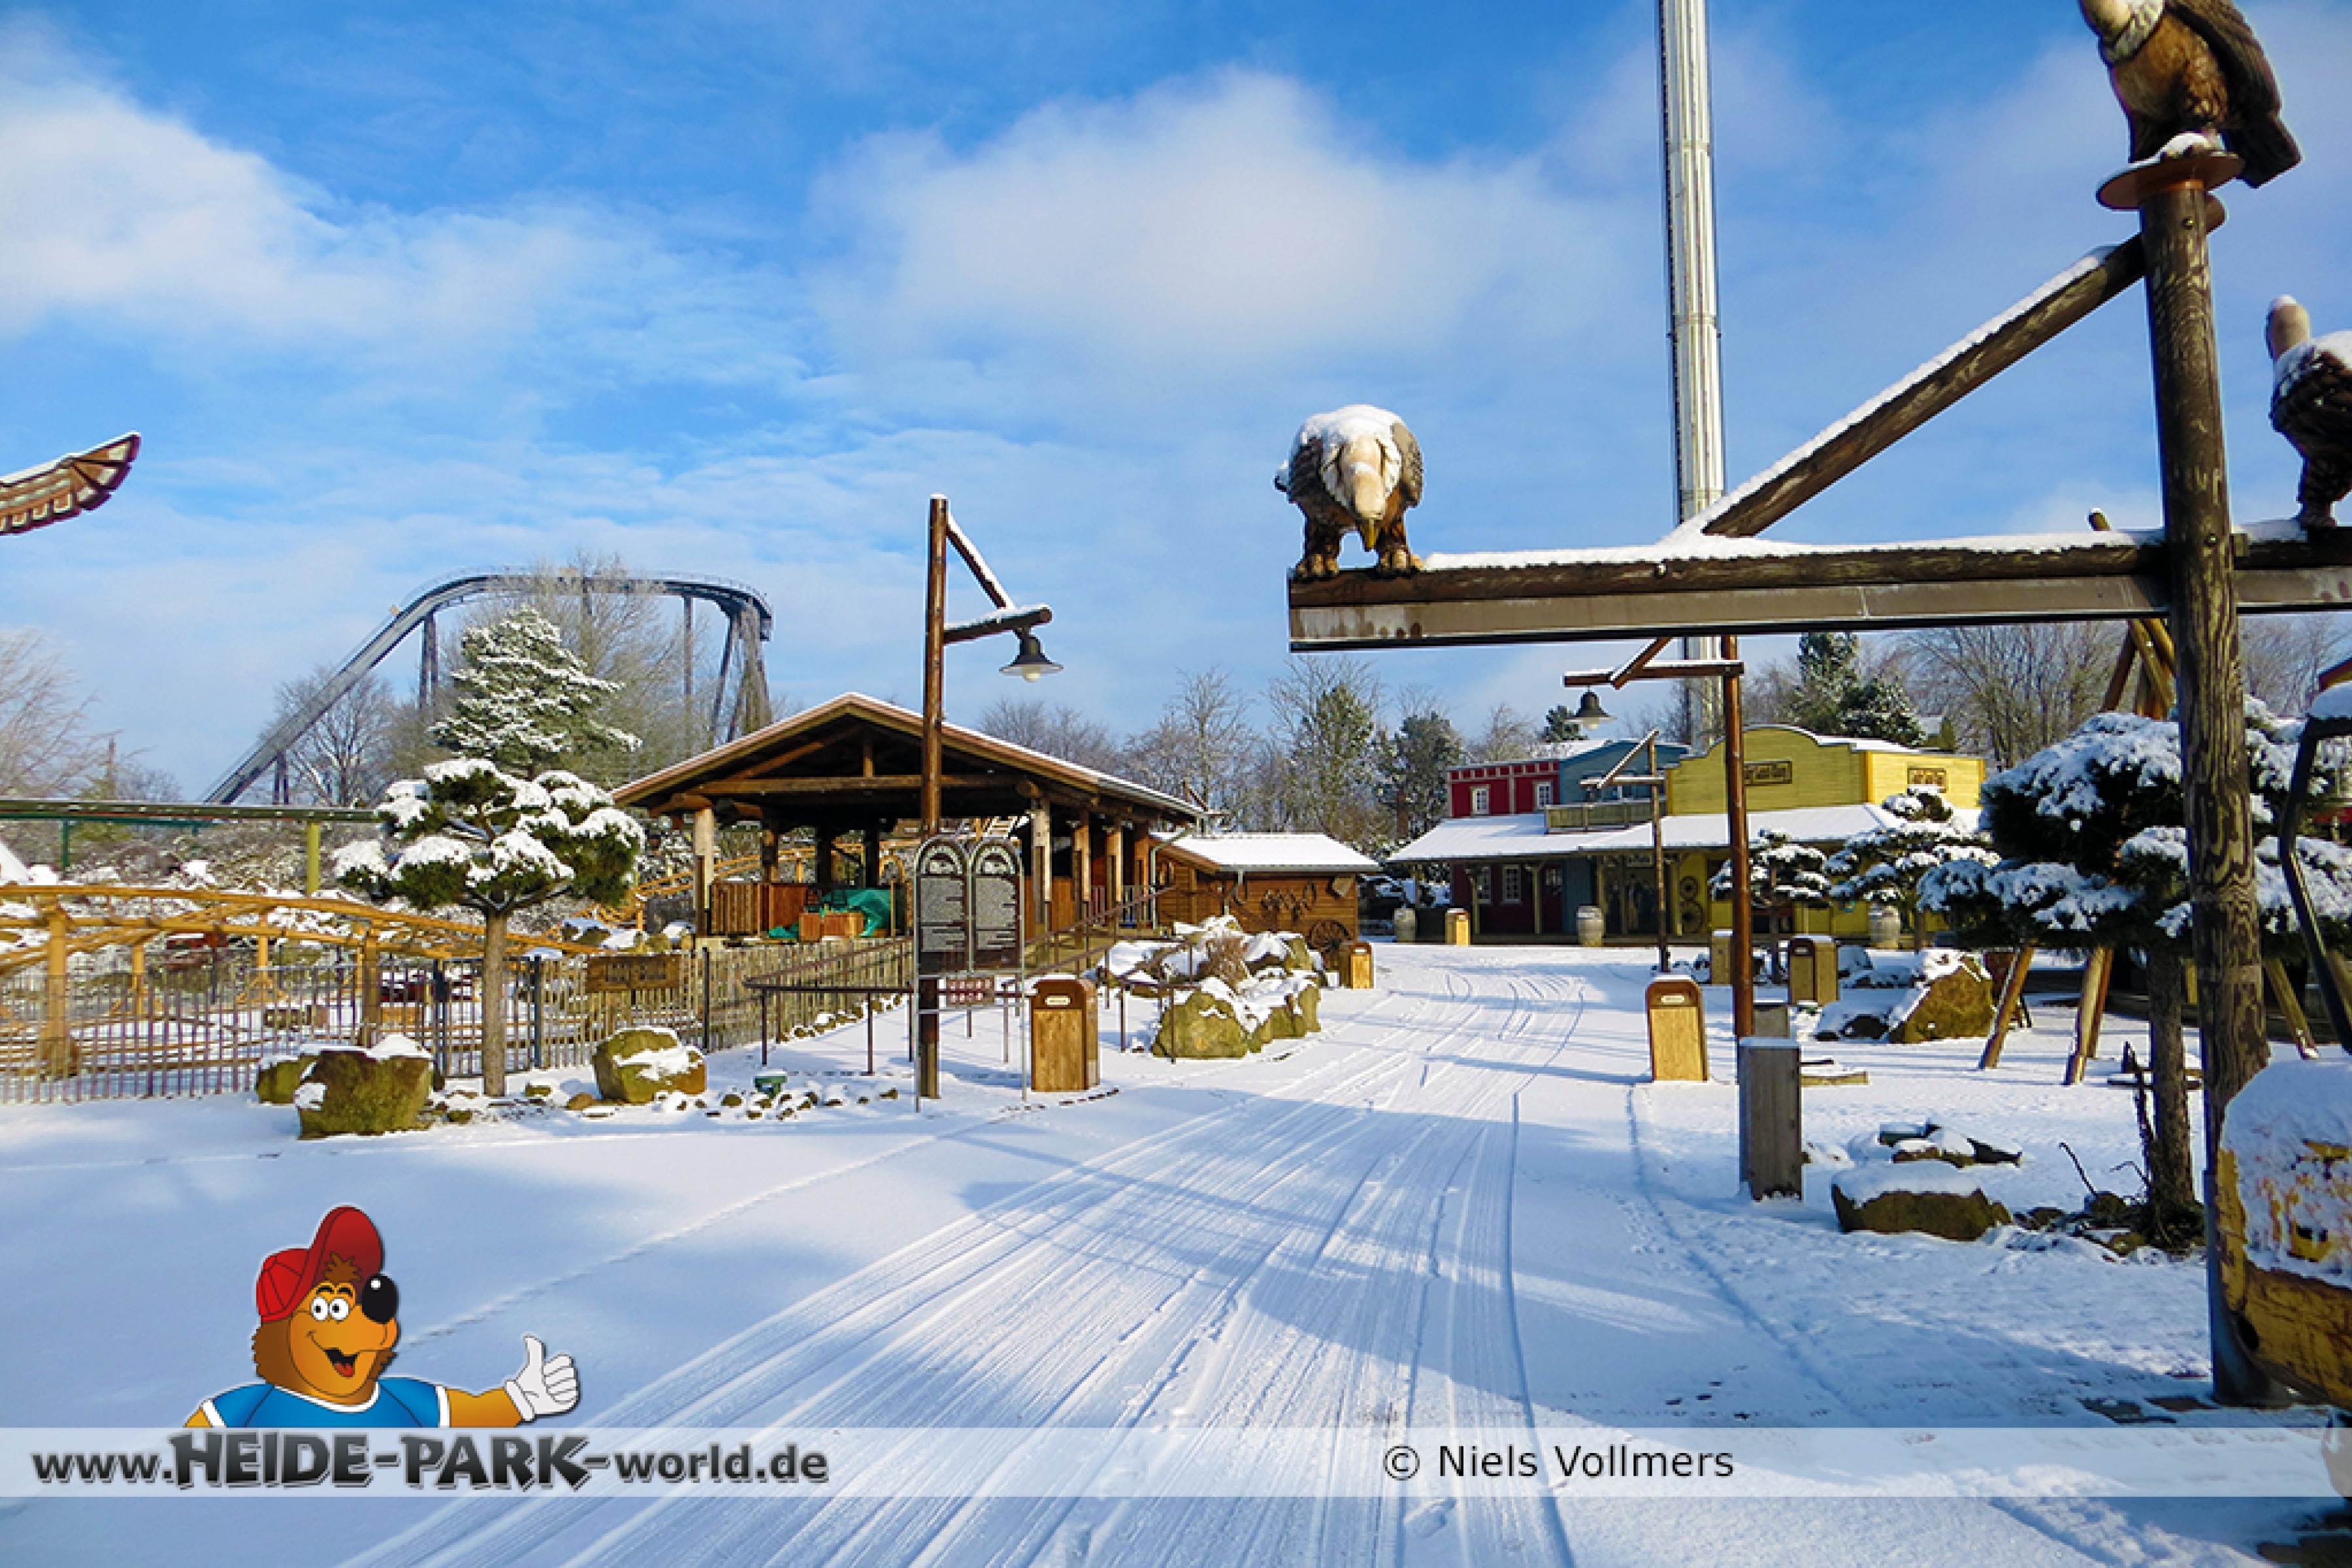 Heide Park - Ein Winterwunderland 2016